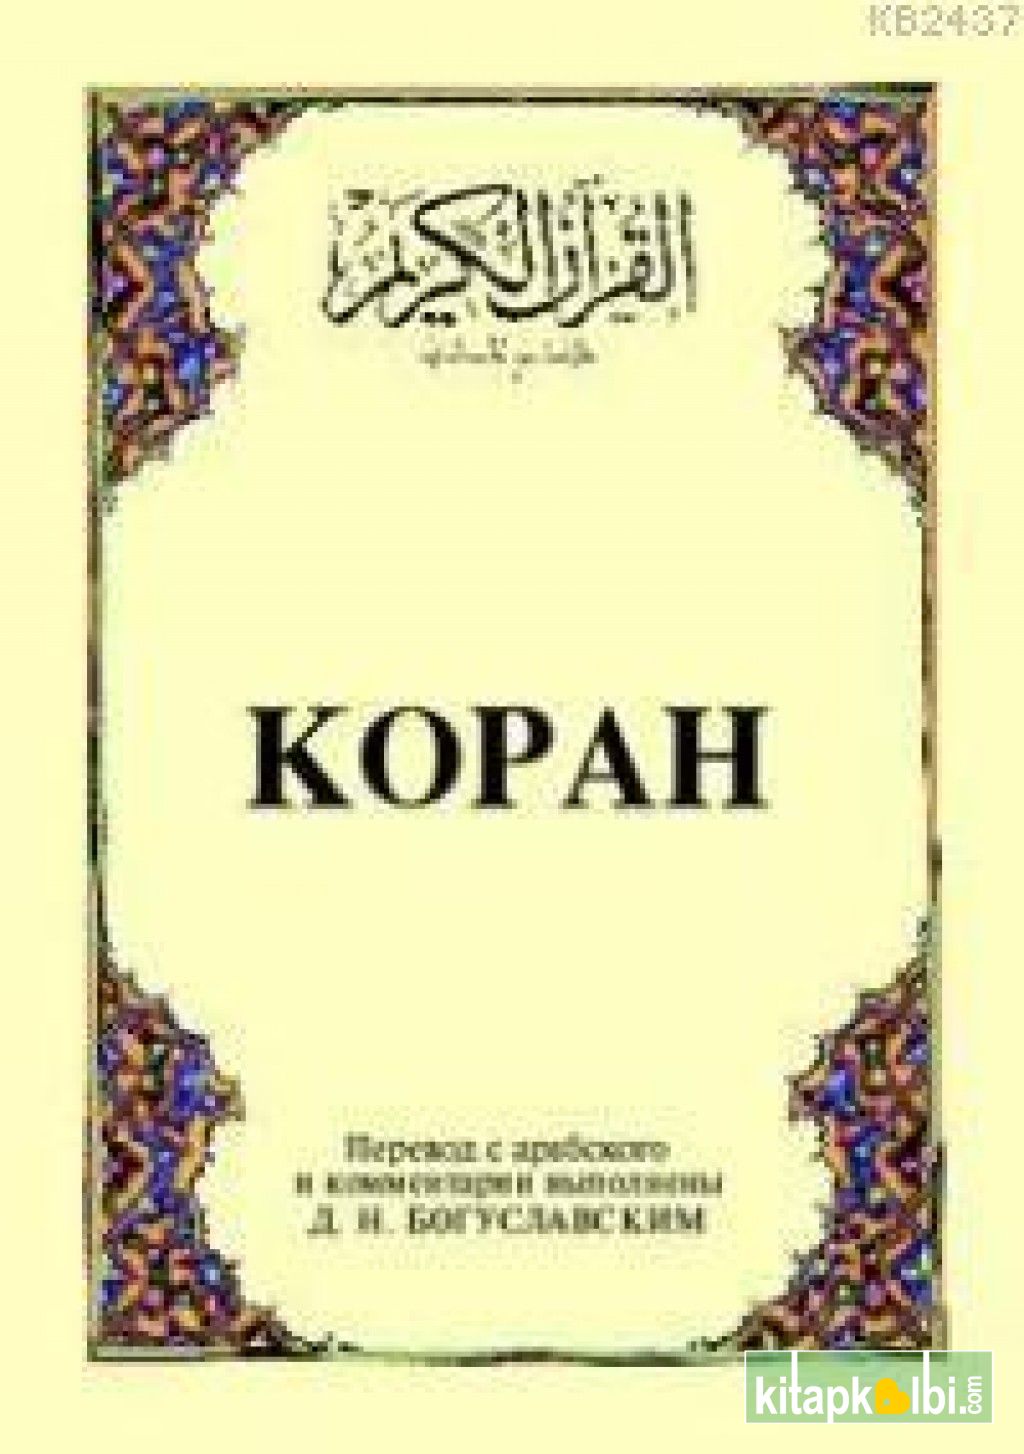 Kopah (cep Boy) (Arapça, Rusça Kur'ân-ı Kerim Ve Meâli)